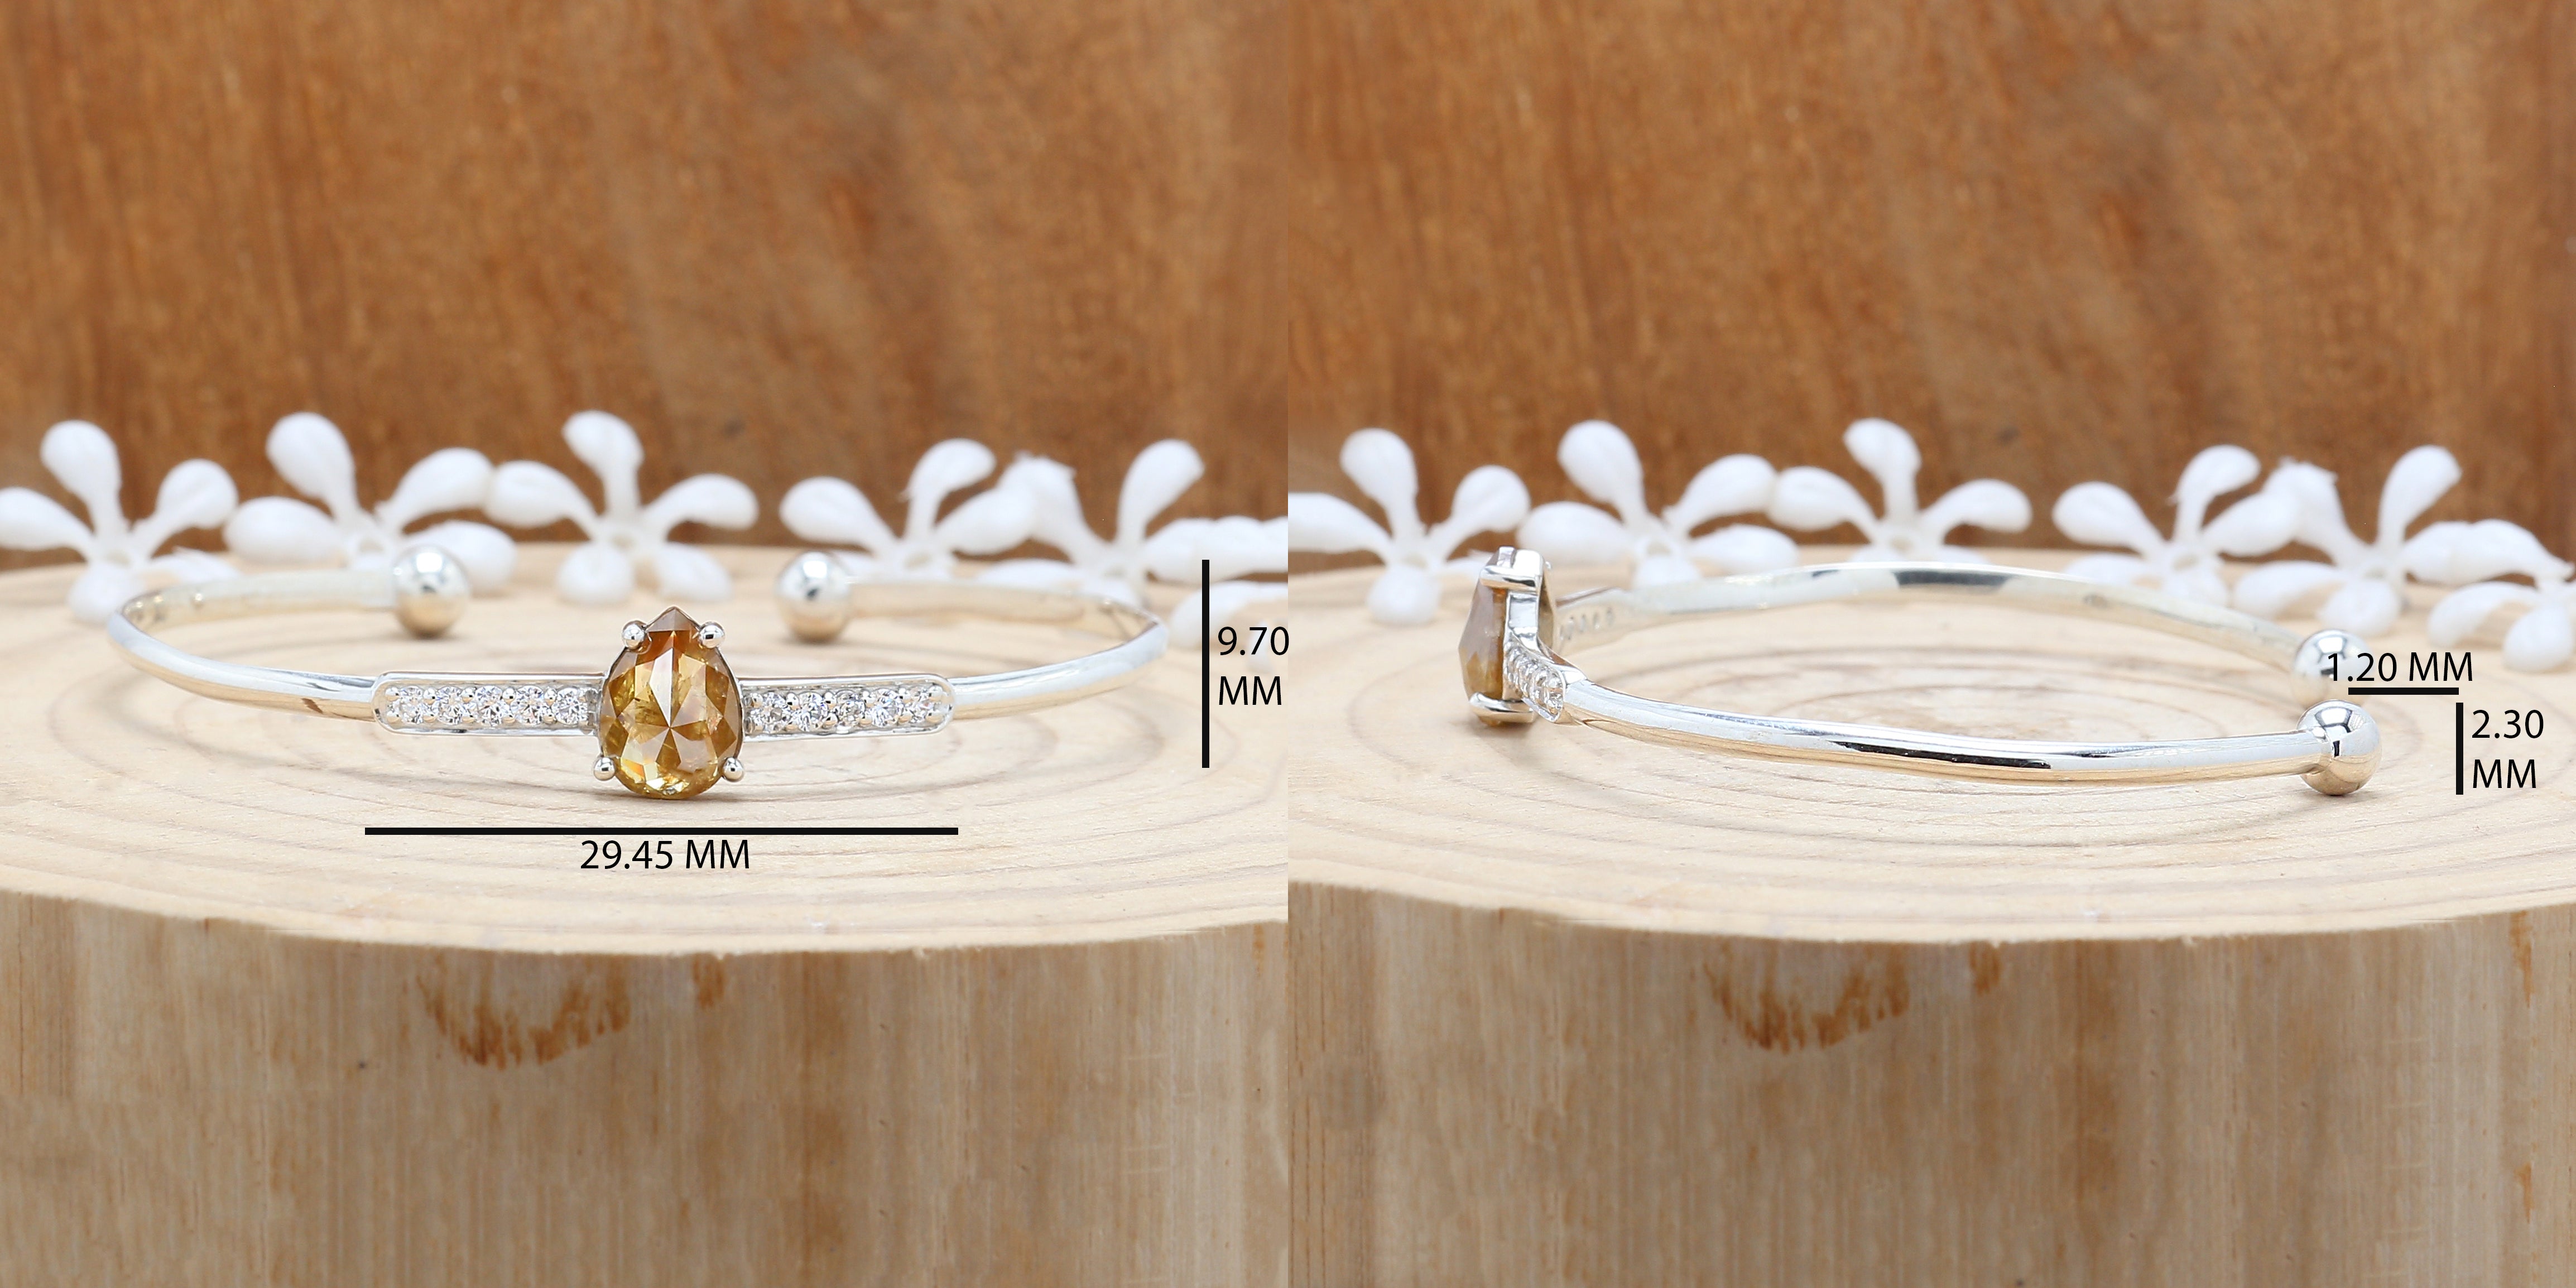 2.24 CT Bracelet, Cuff Bracelet, Pear Diamond Bracelet, Round Diamond Bracelet, Pear Bracelet, Anniversary Gift, Gift For Her, KDL9779